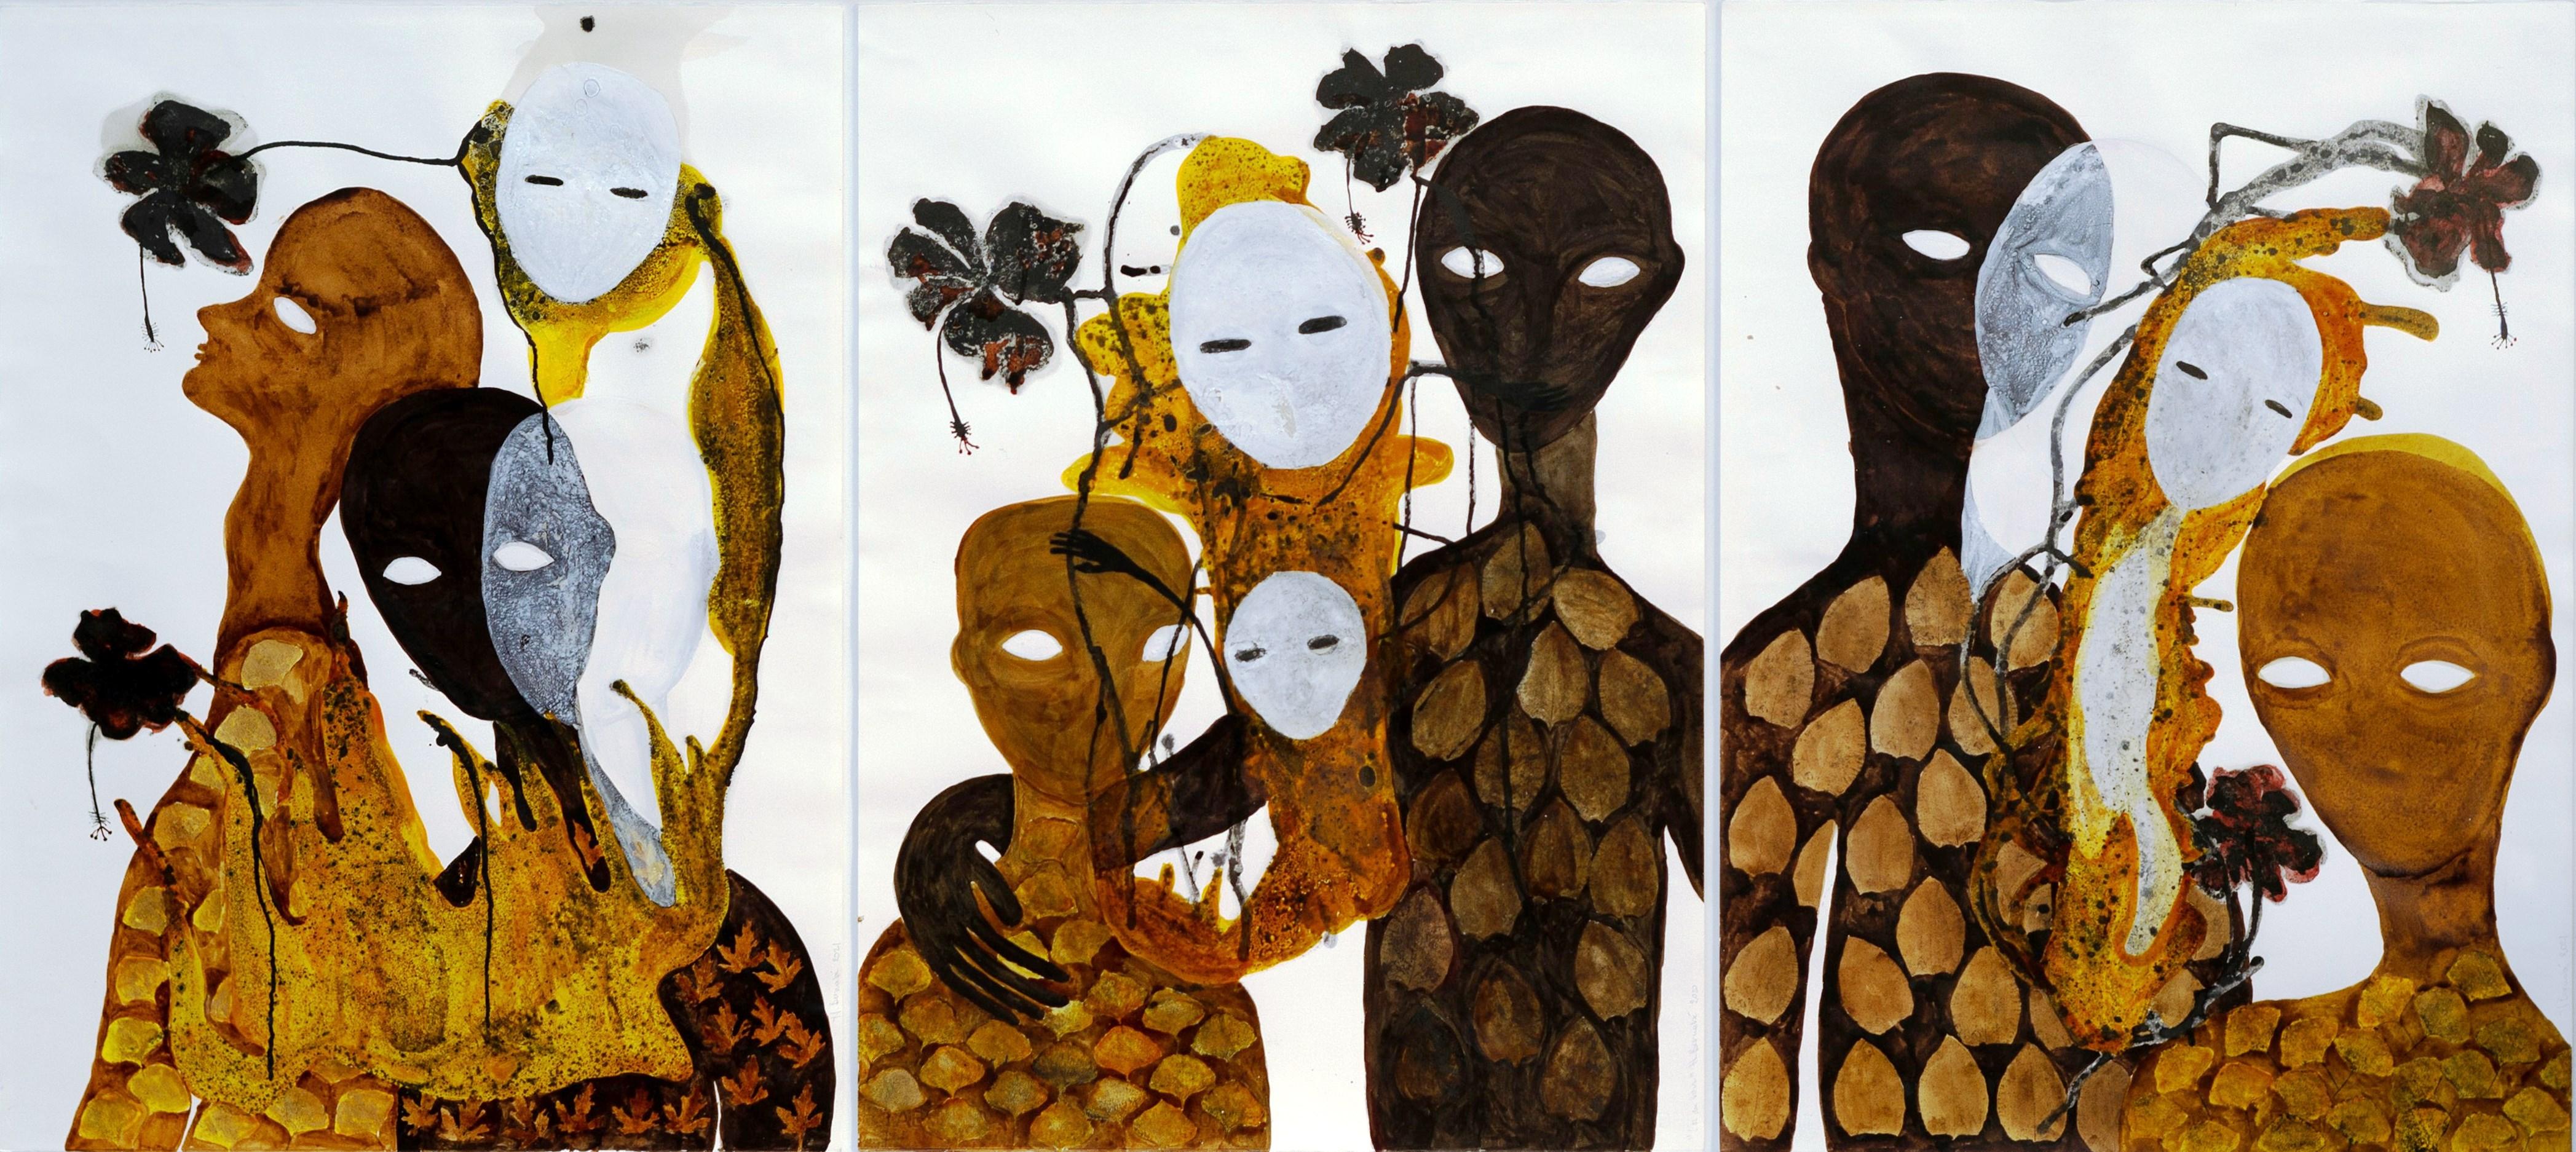 Haude Bernab dessin du 21e siècle "The evening gold", art contemporain Afrique, ocre